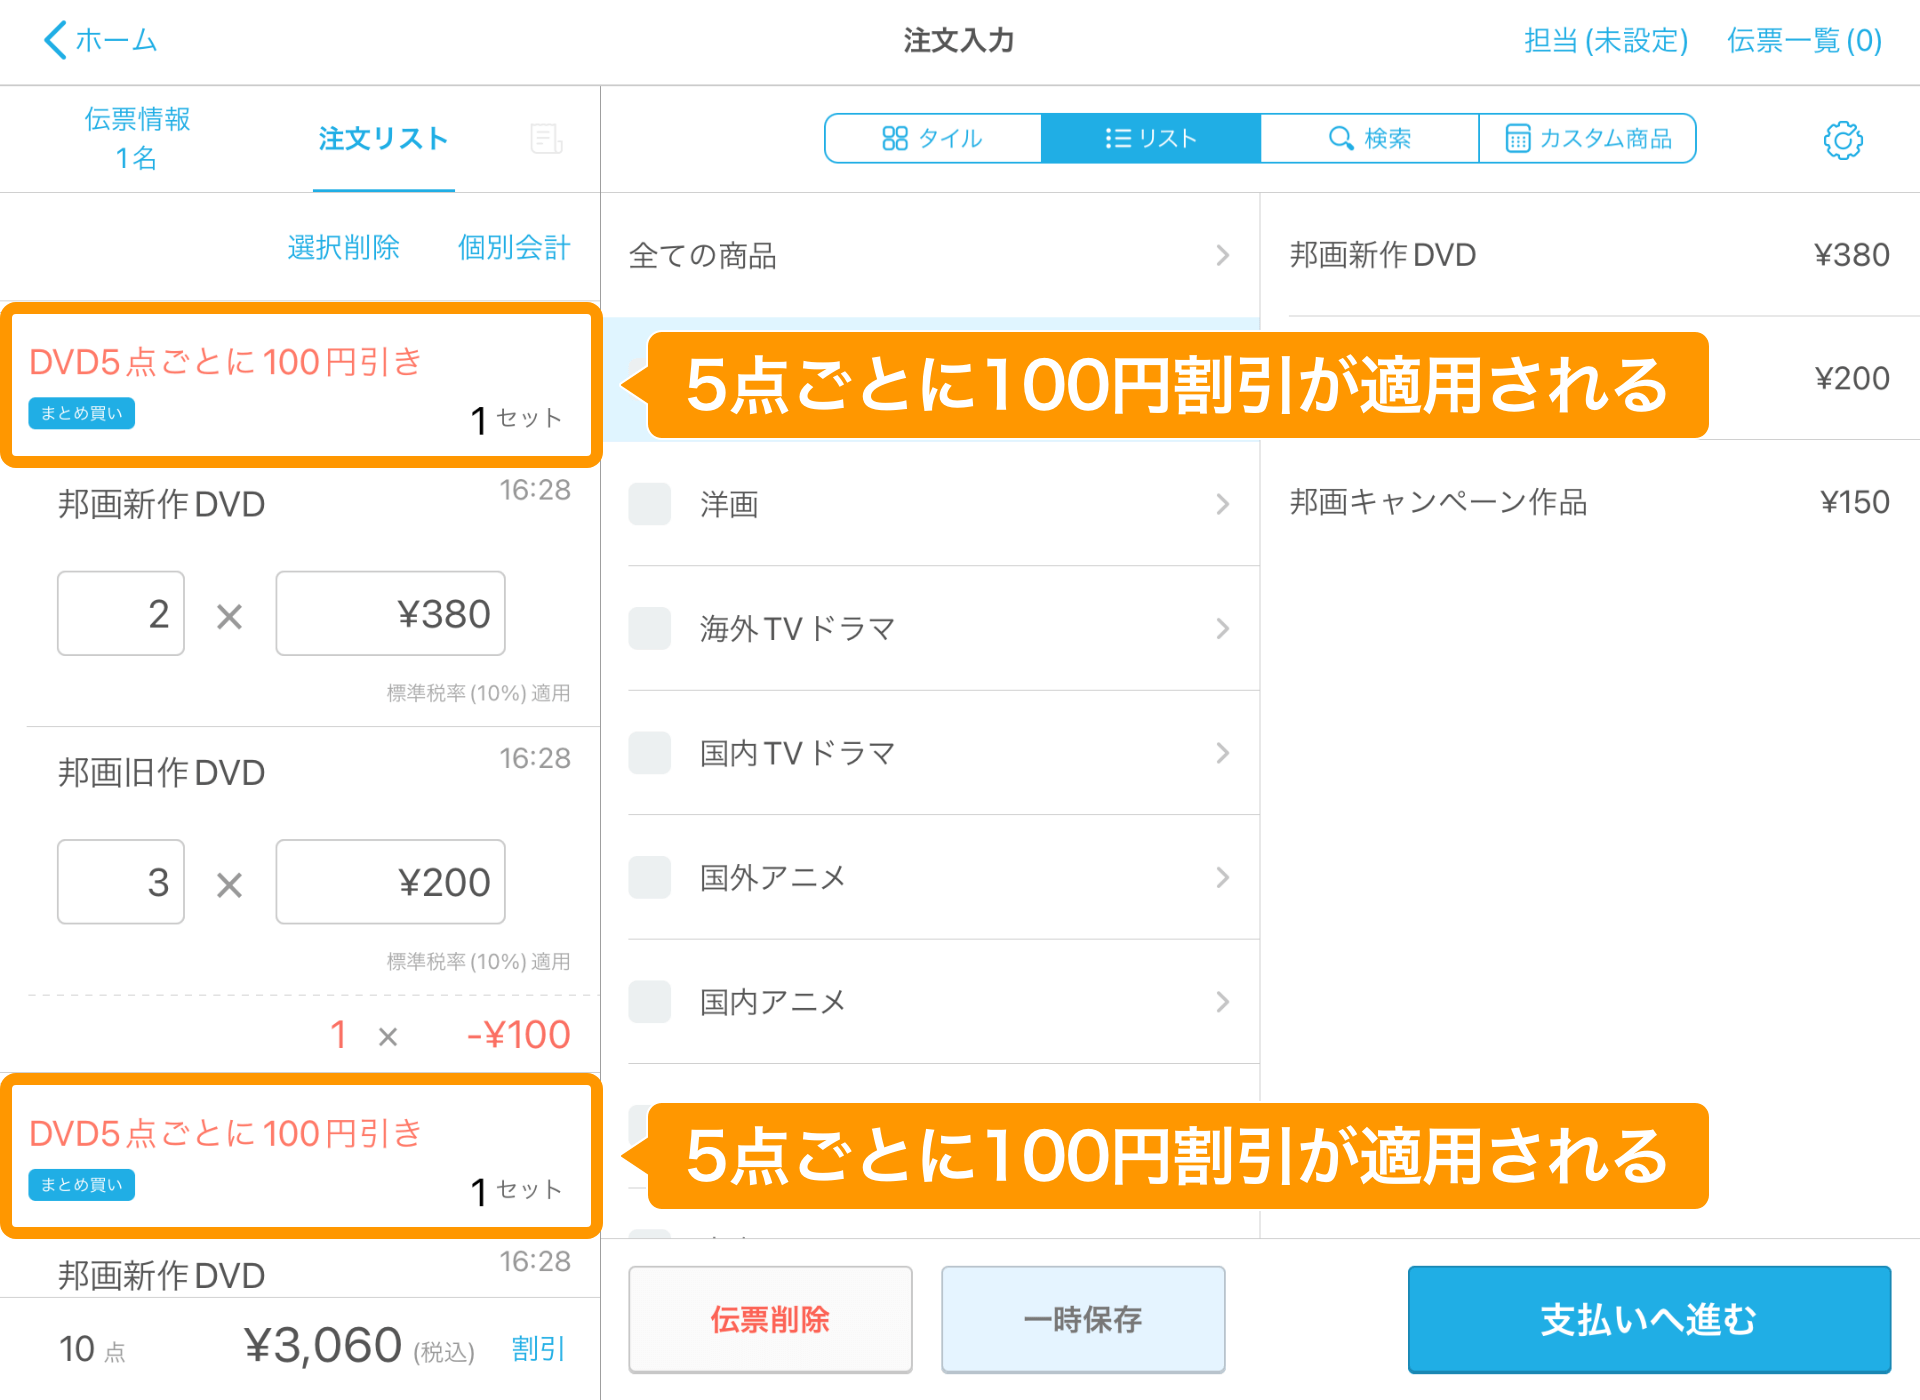 03 Airレジ 注文入力画面 5点ごとに100円割引が適用される